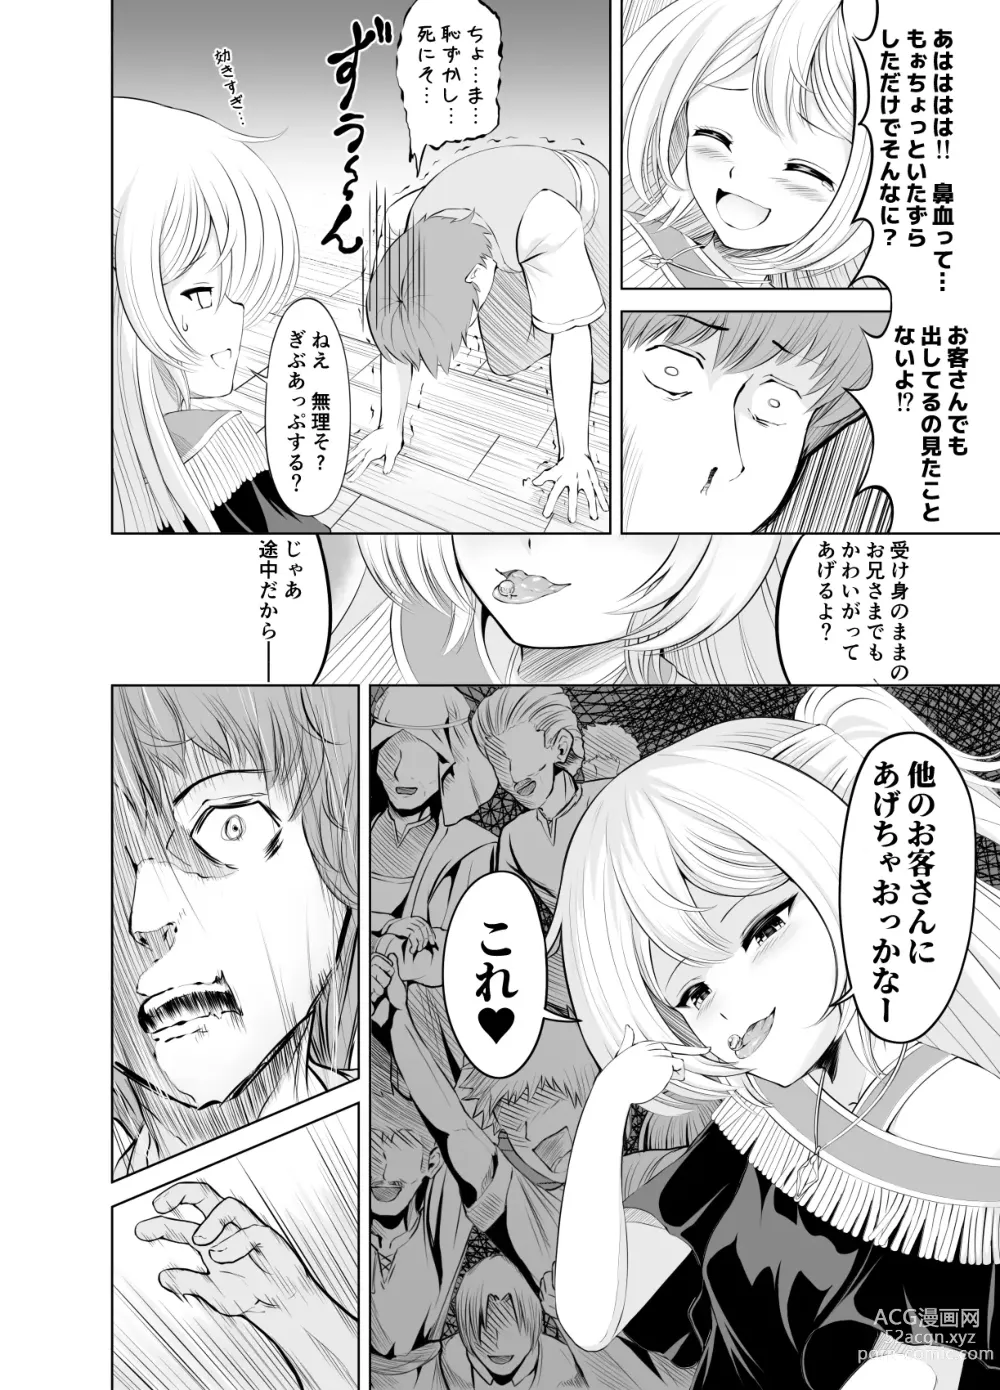 Page 14 of doujinshi Ama Zeme ~Saioshi no Koakuma Imouto-kei Odoriko ni Omocha ni Sareru Hibi no Hitomaku~